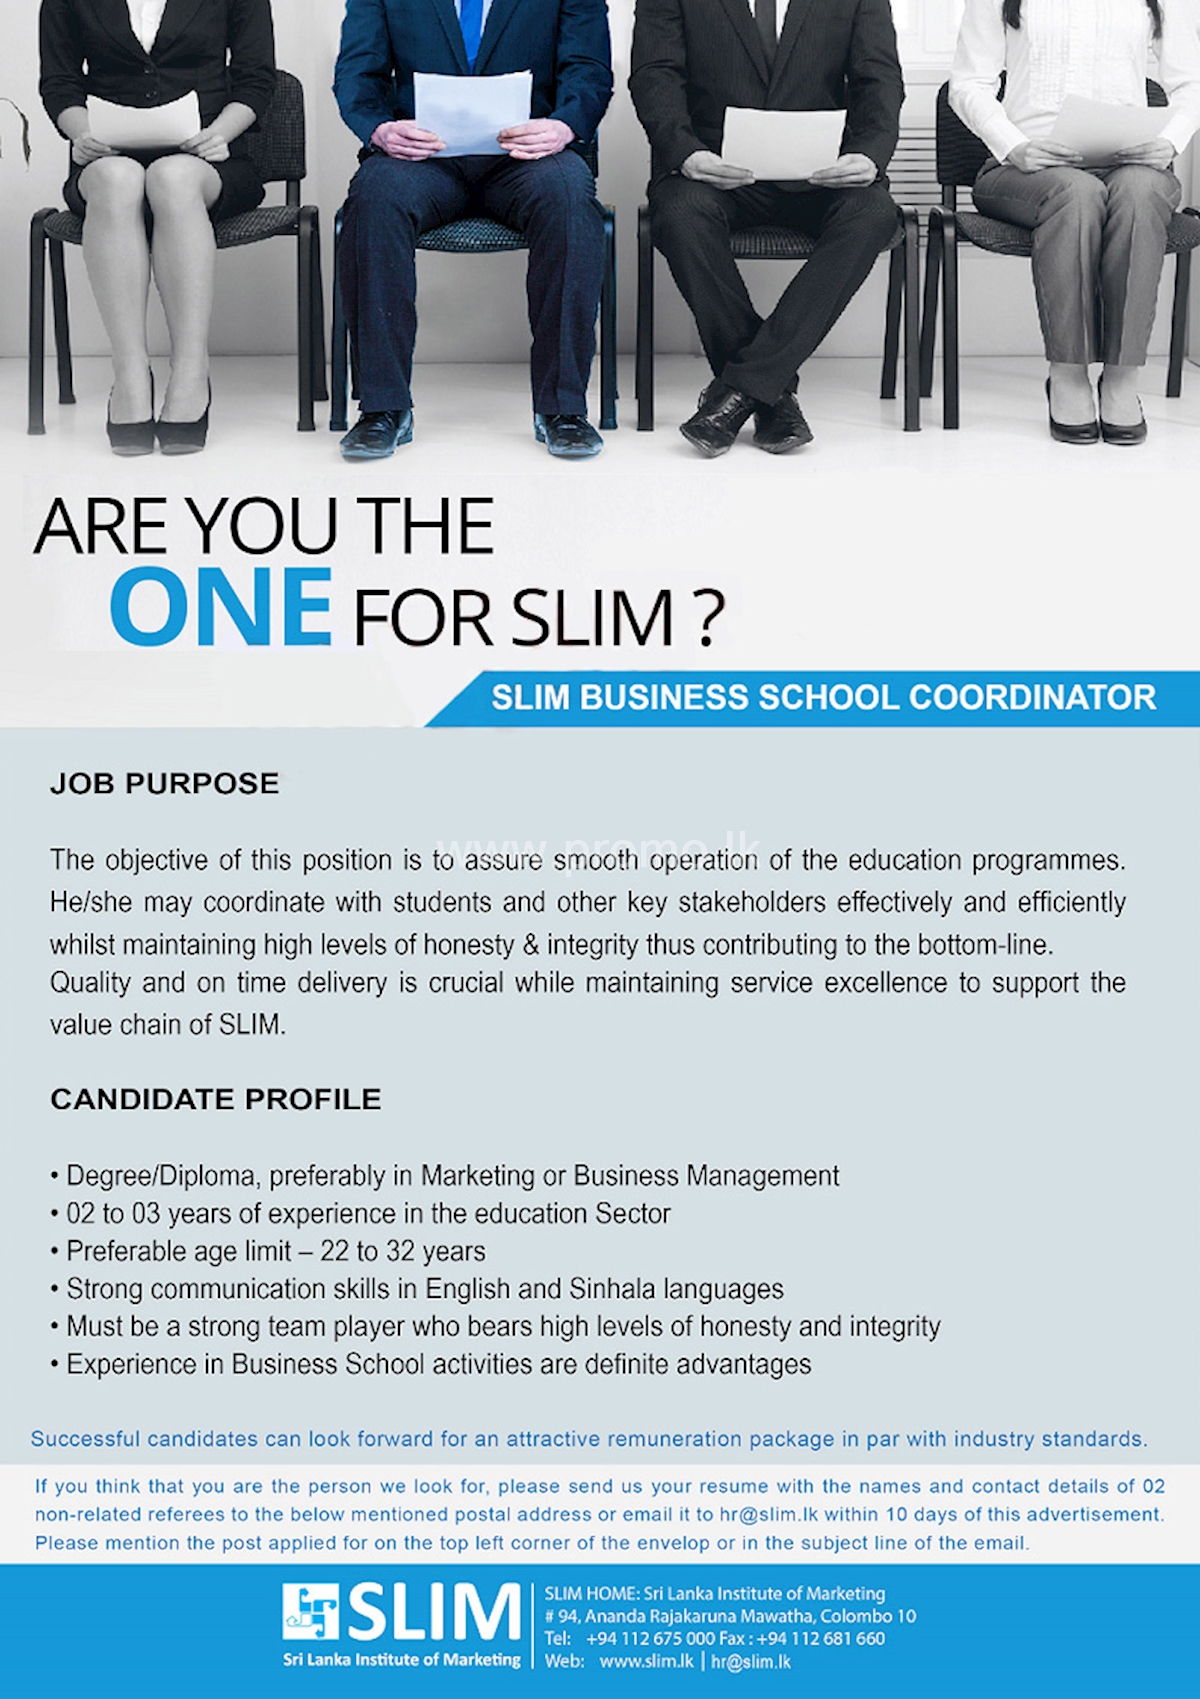 SLIM Business School Coordinator